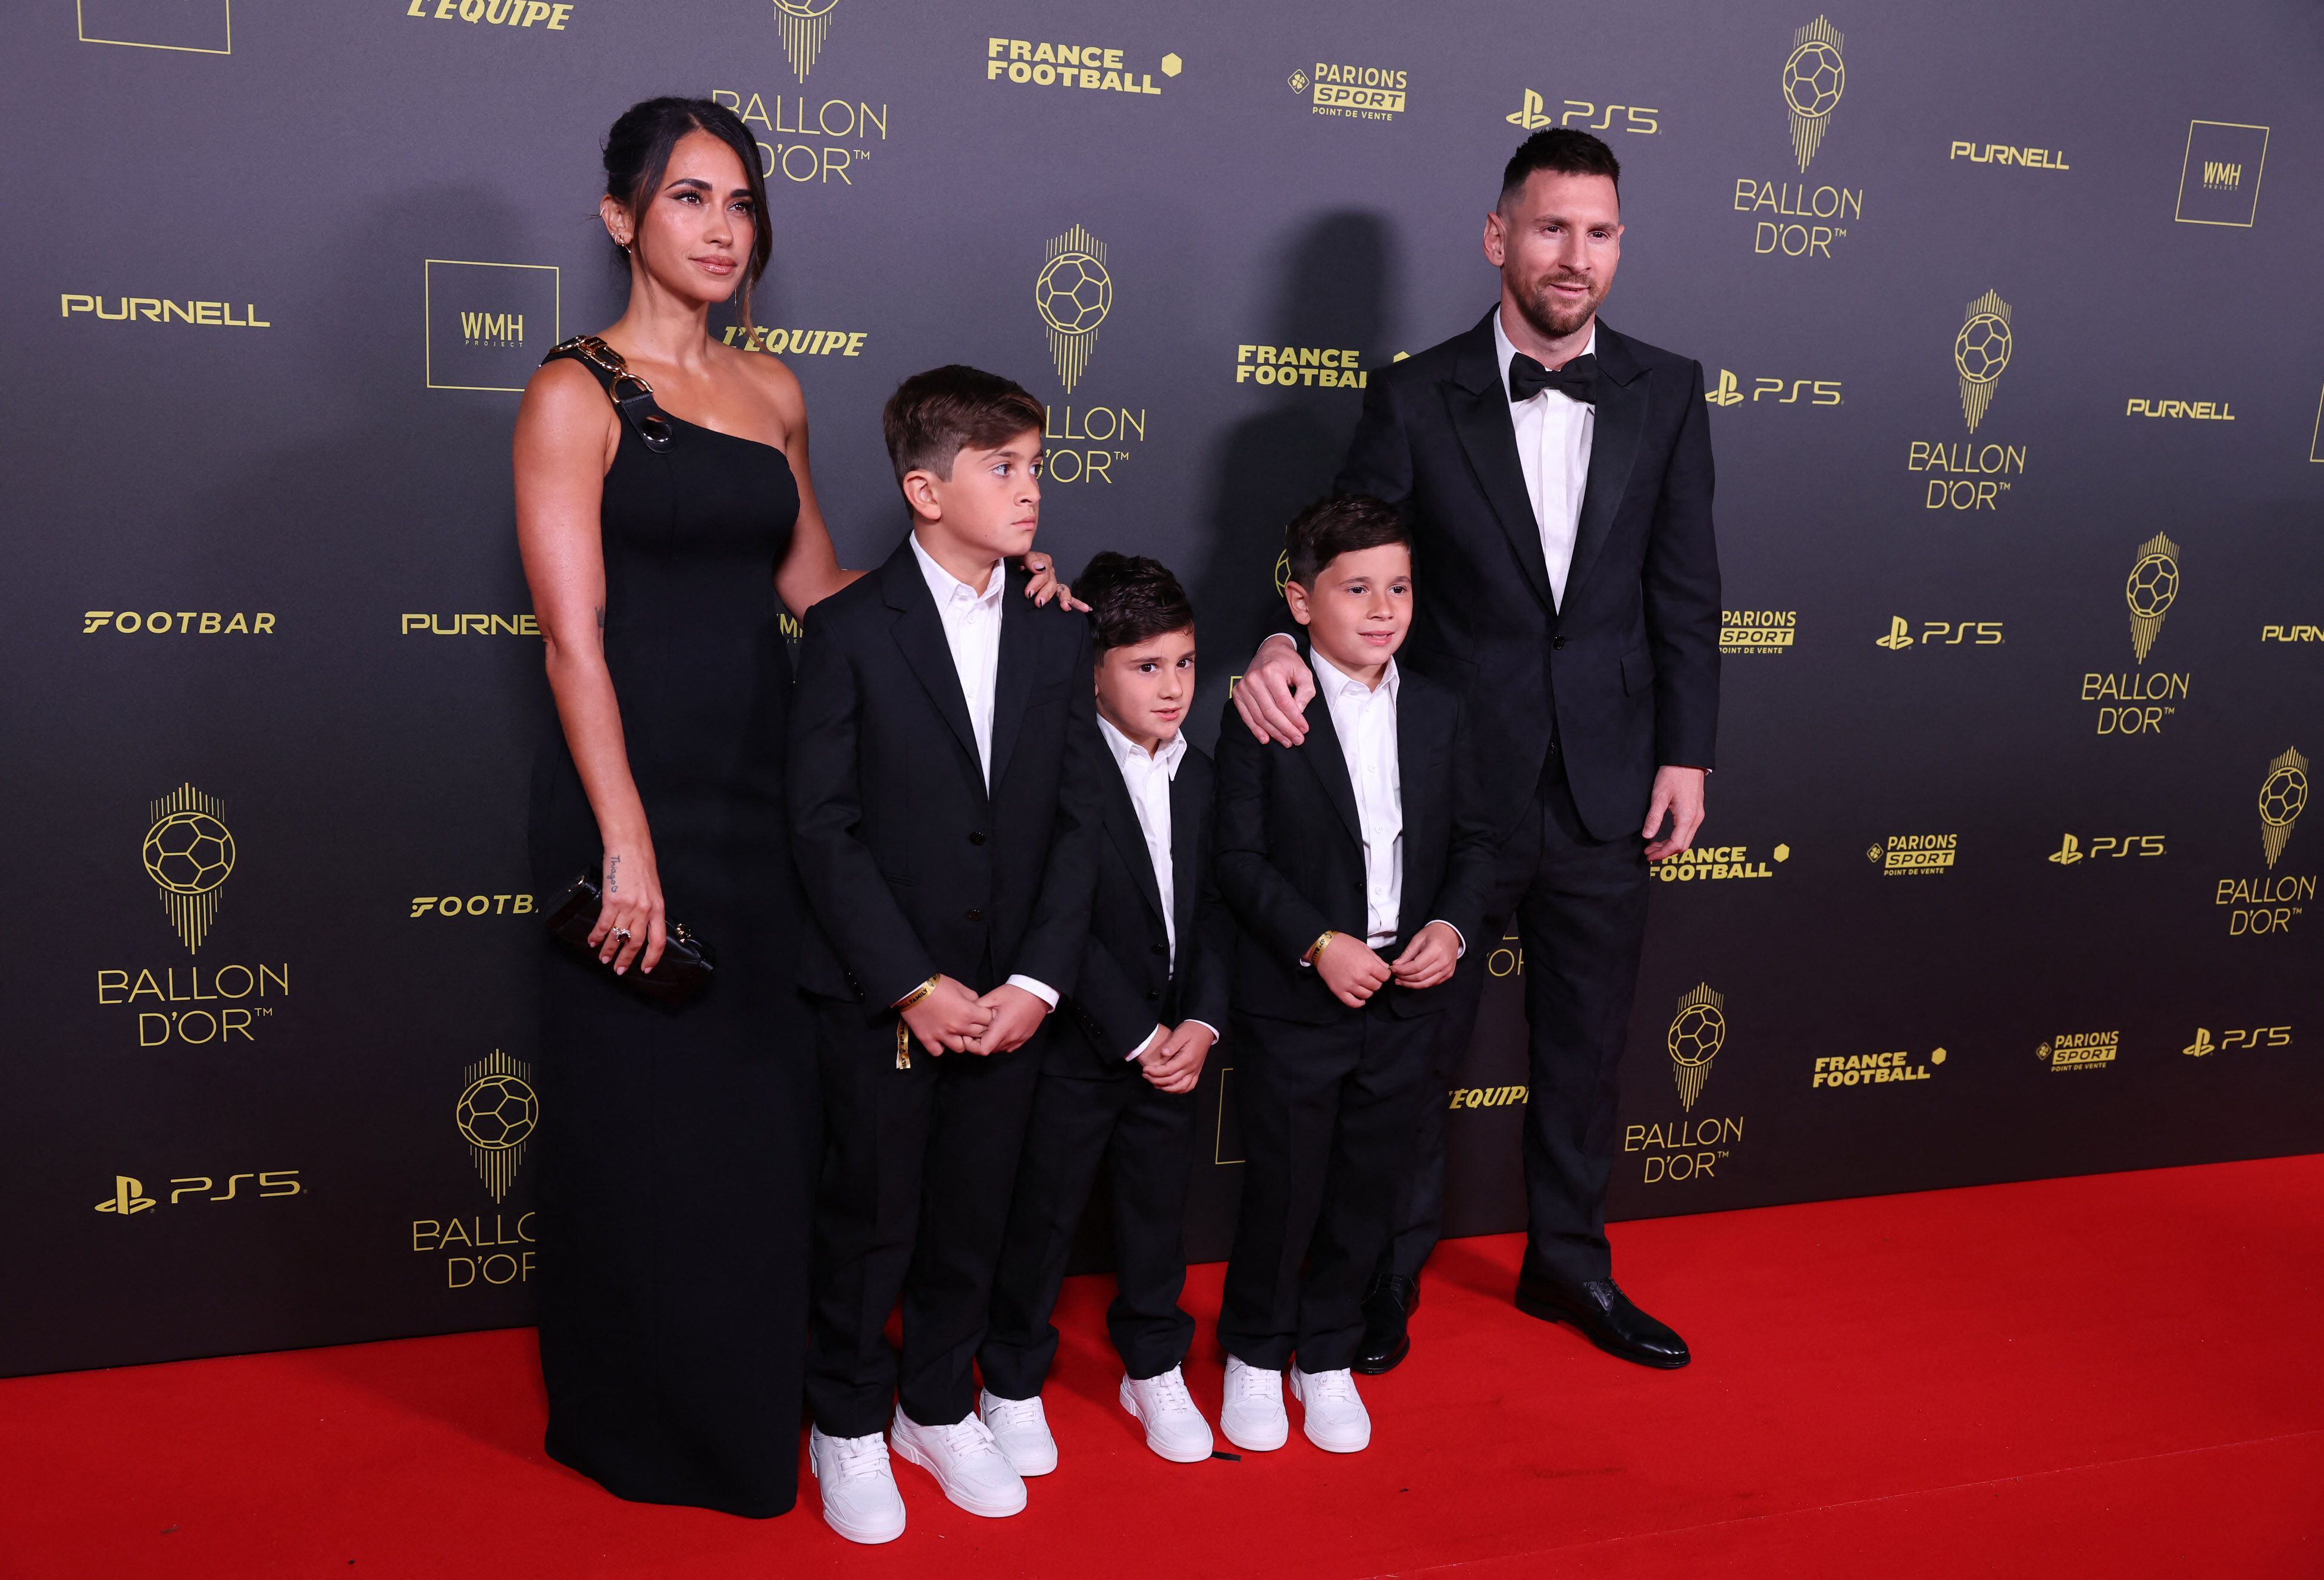 El capitán argentino es uno de los candidatos al Balón de Oro. Llegó a la gala con su familia, todos con el color oscuro como dominante en sus looks /REUTERS/Stephanie Lecocq